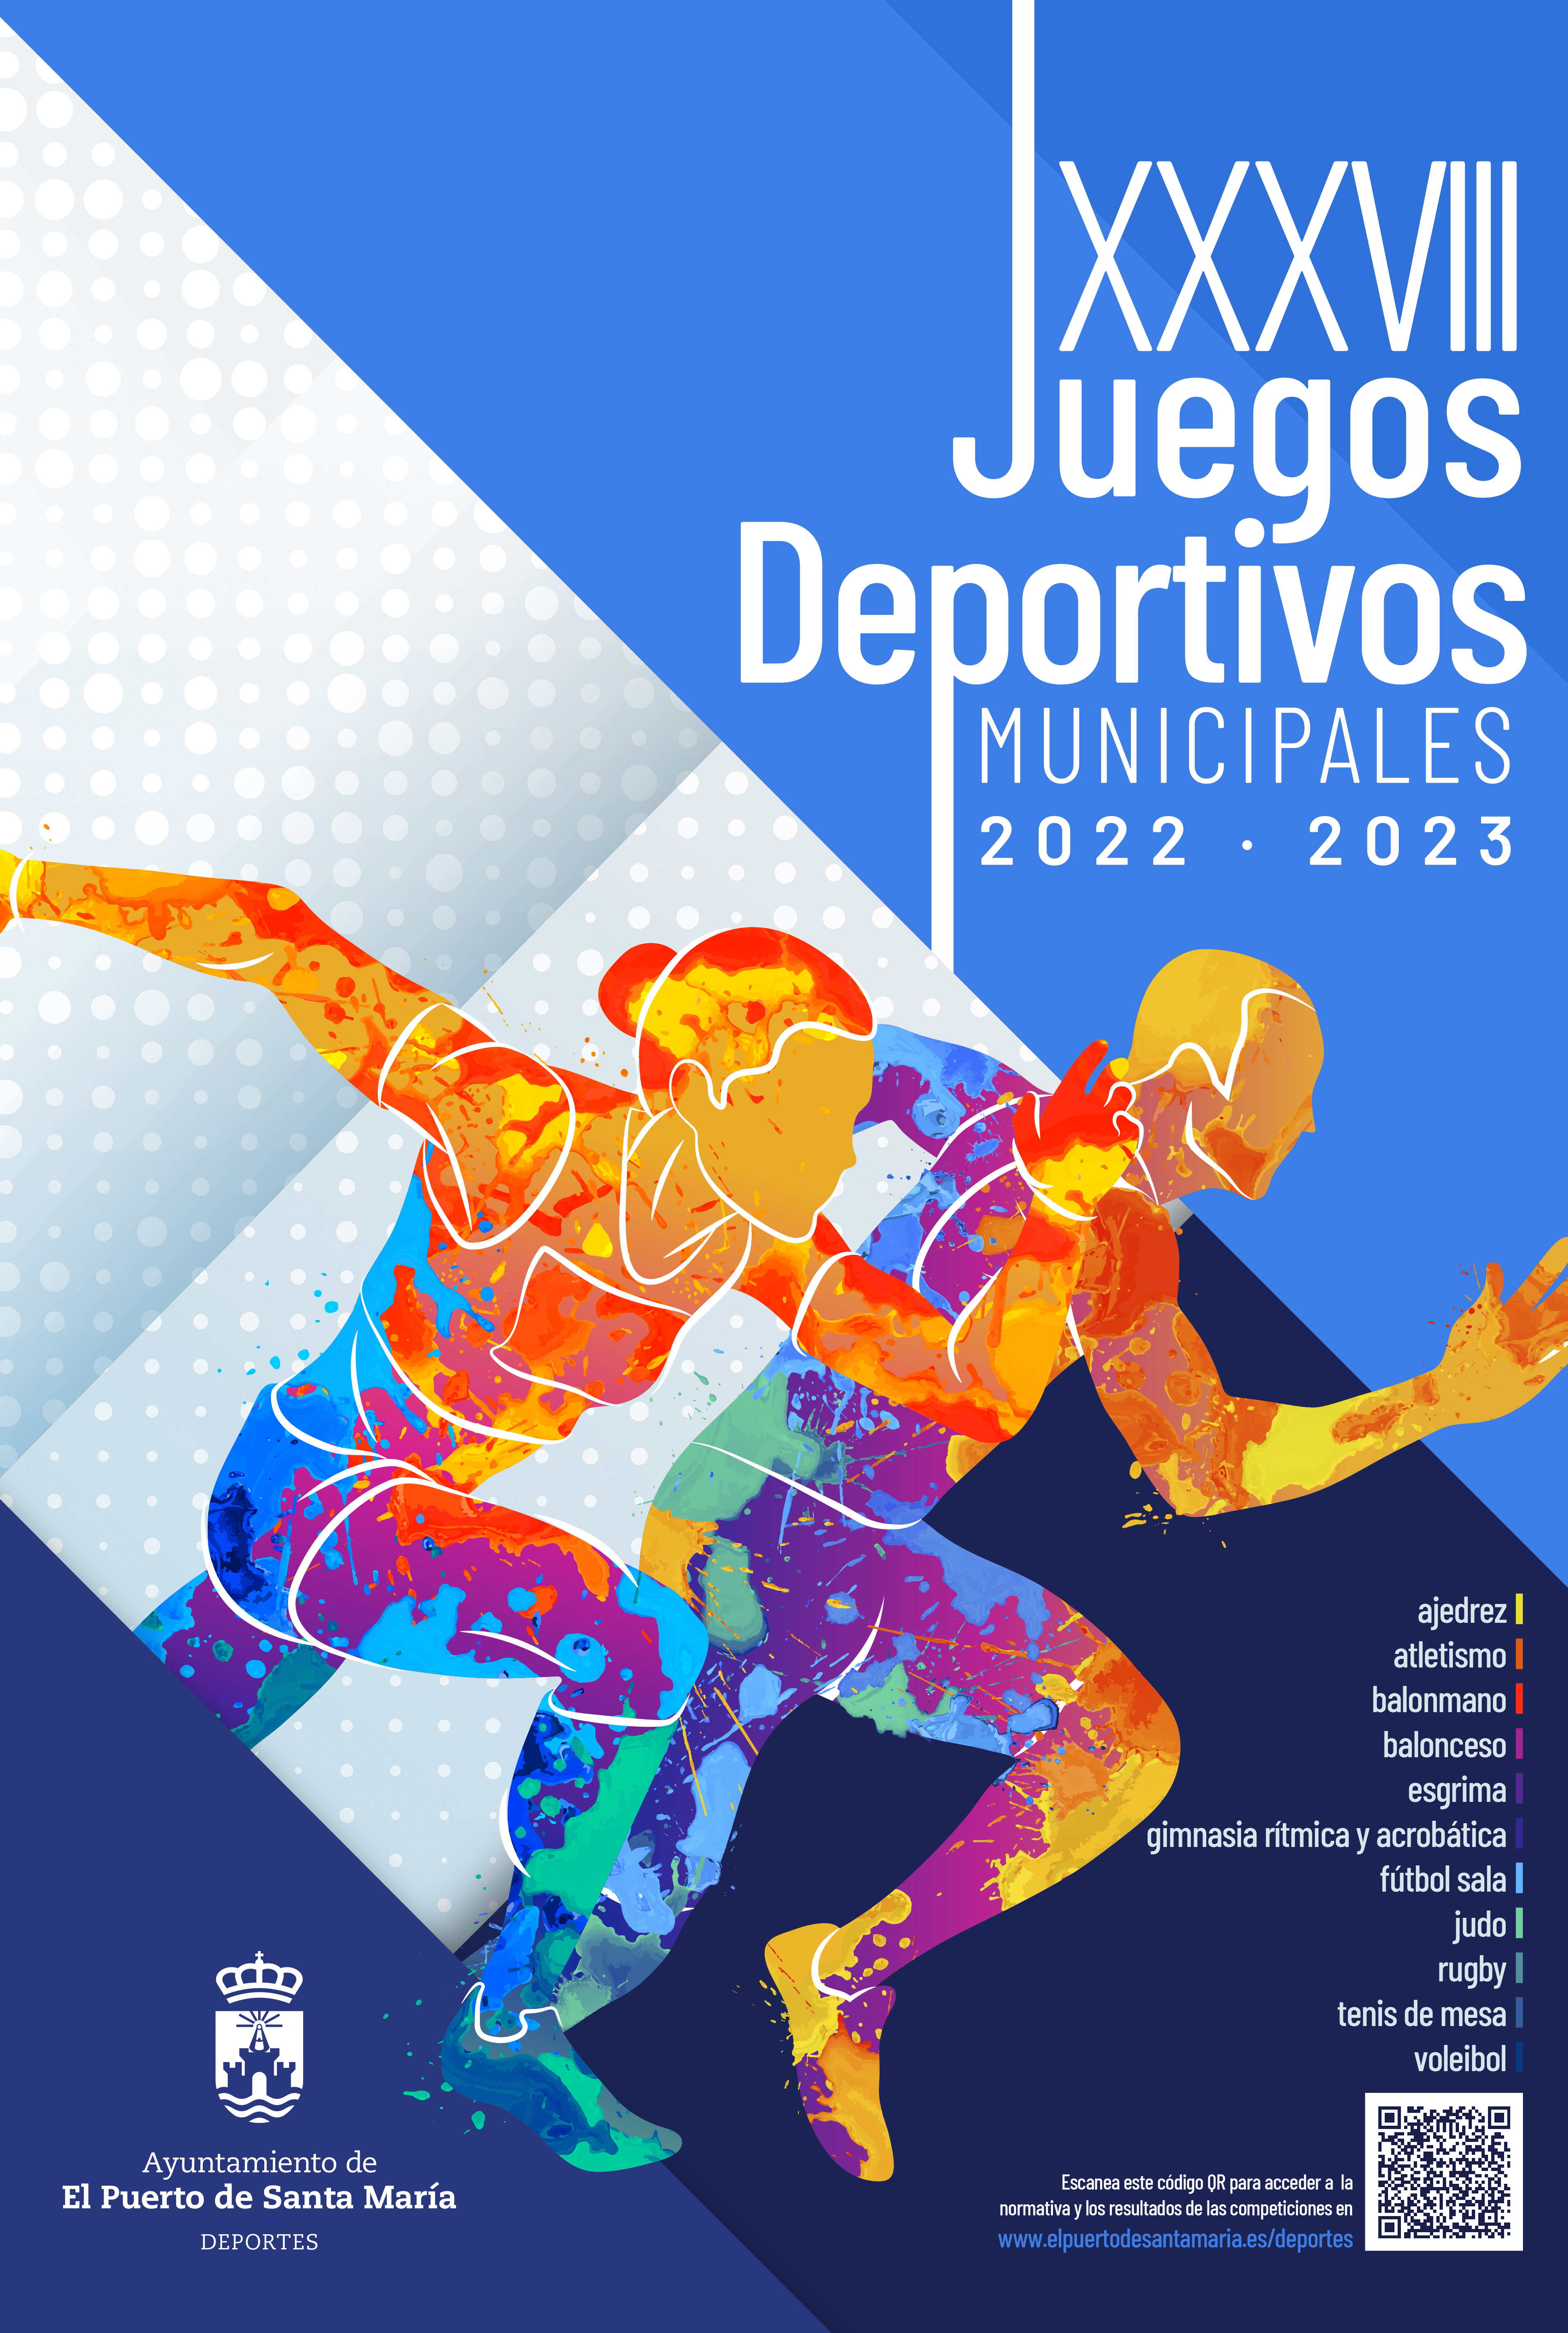 Juegos Deportivos Municipales 2023 - El Puerto de Santa María